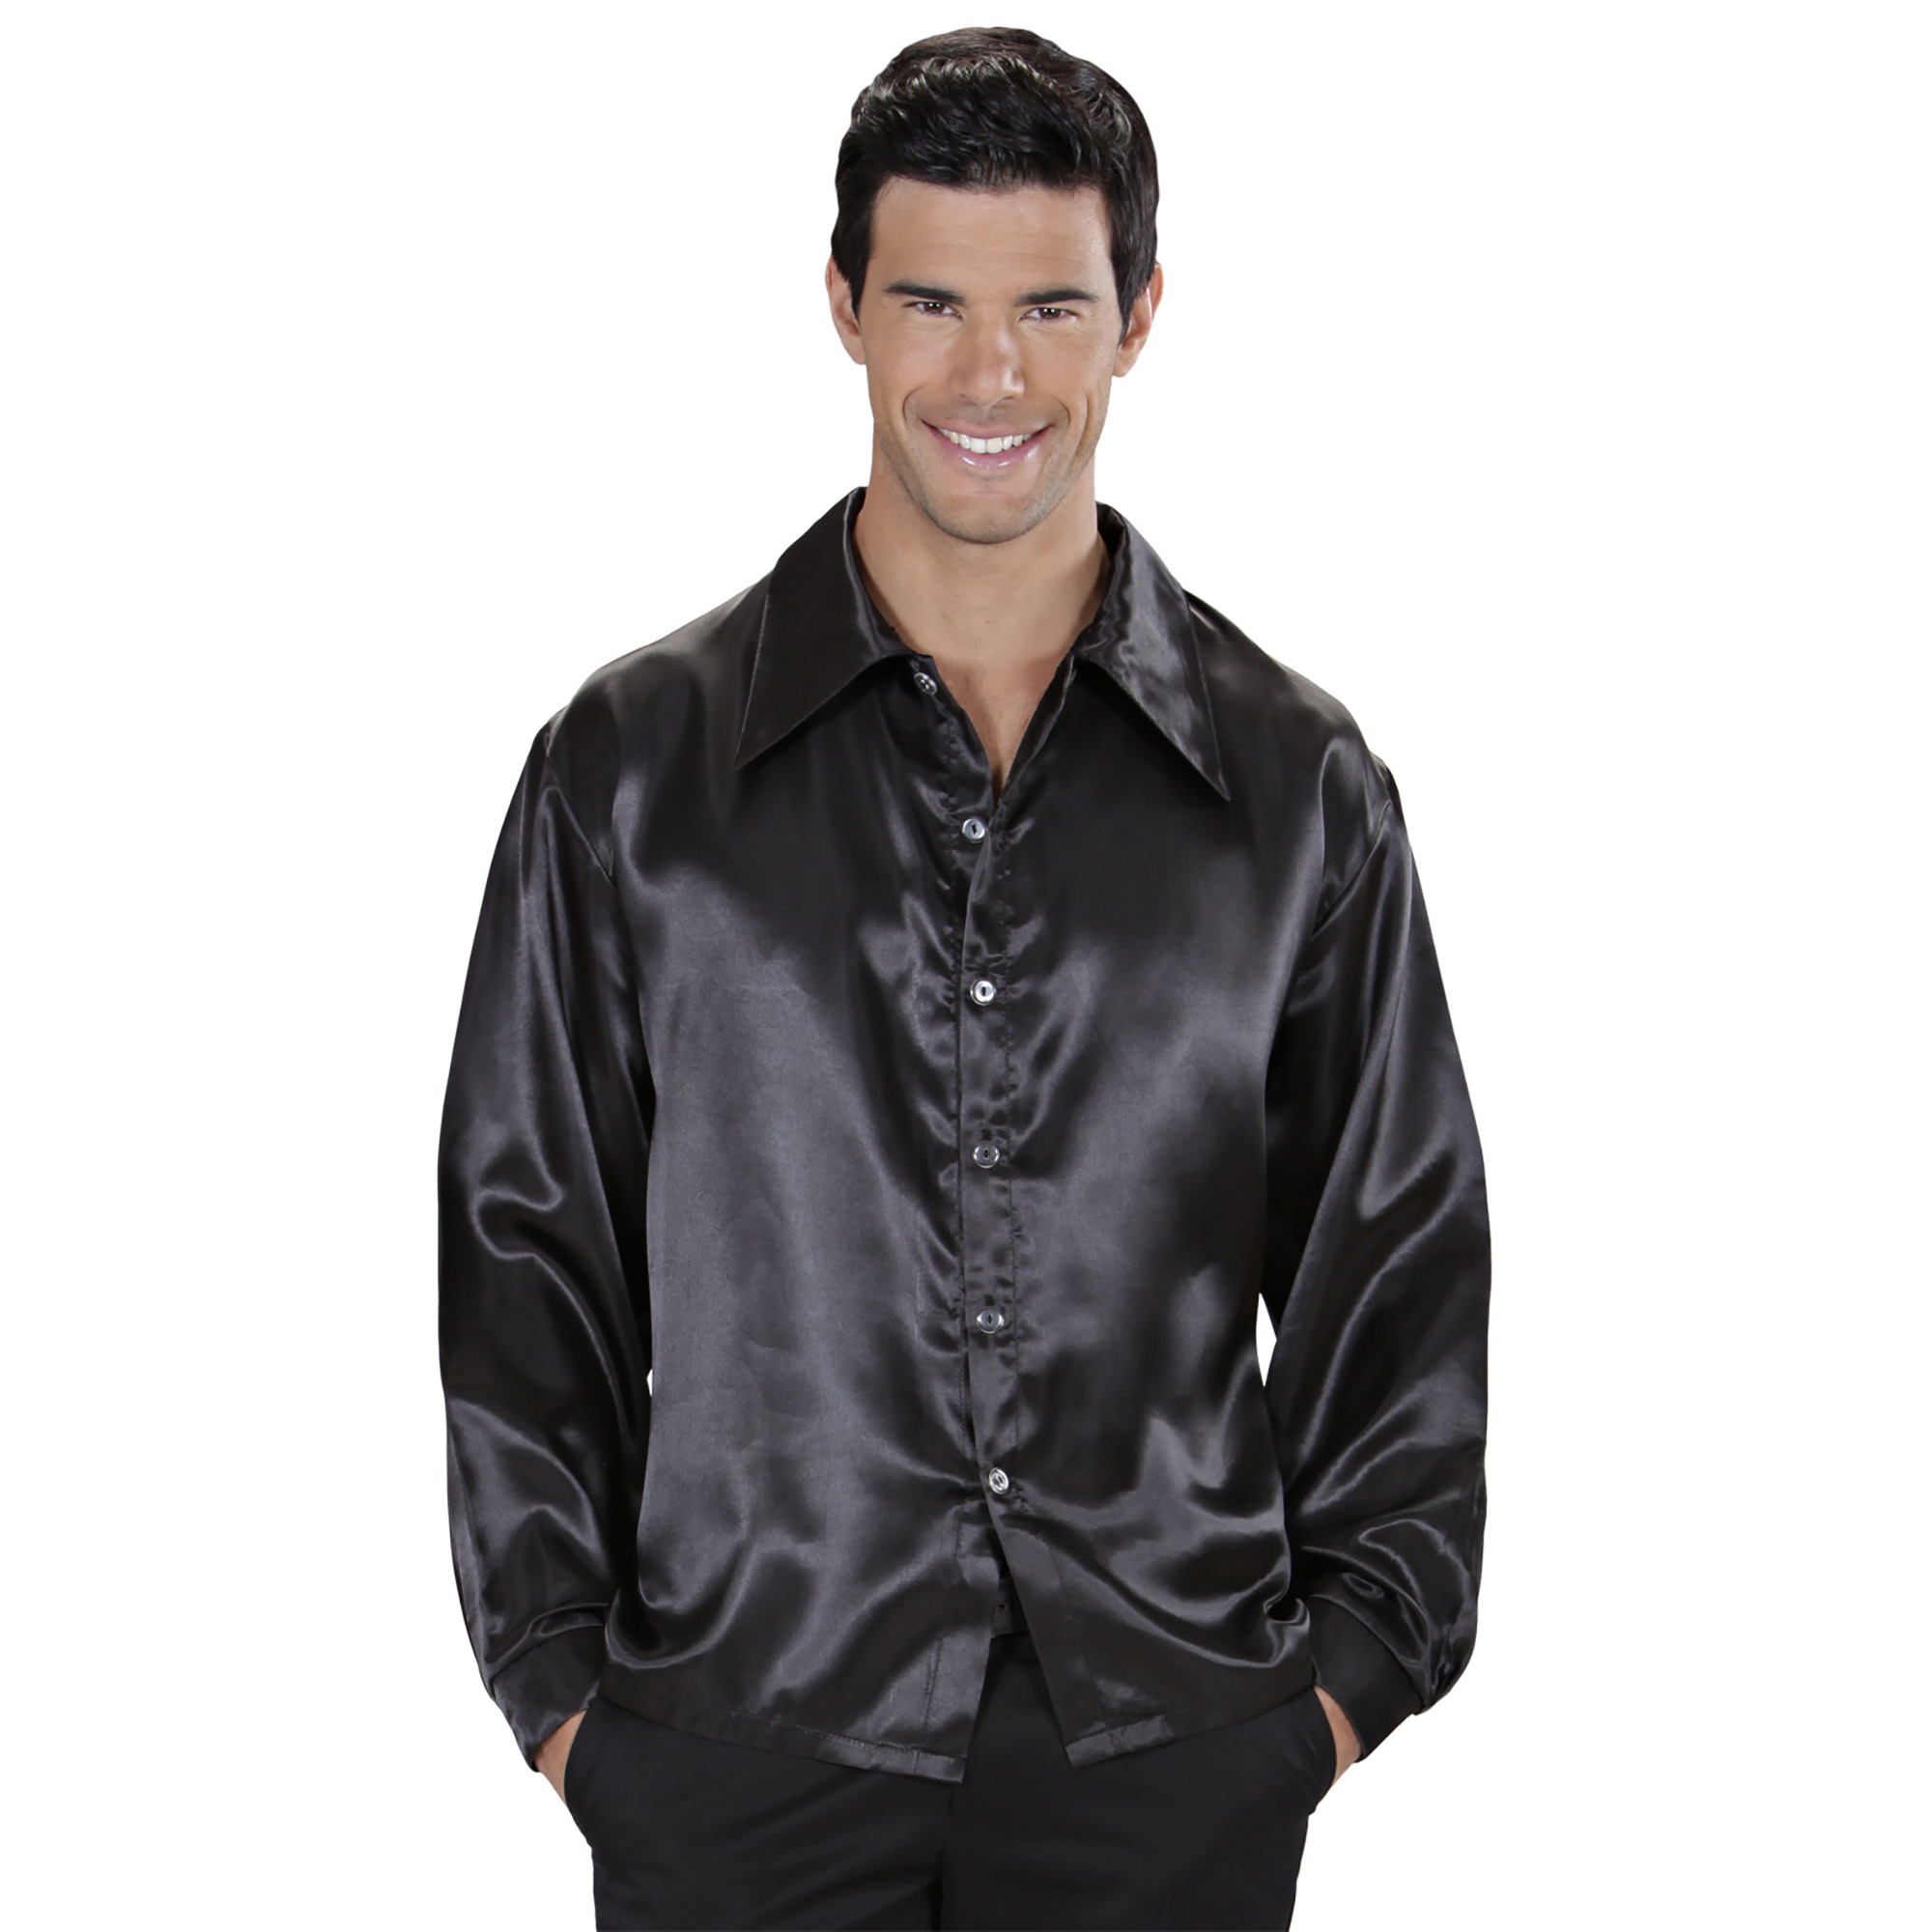 WIDMANN - Zwart satijnachtig overhemd voor heren - Medium - Volwassenen kostuums